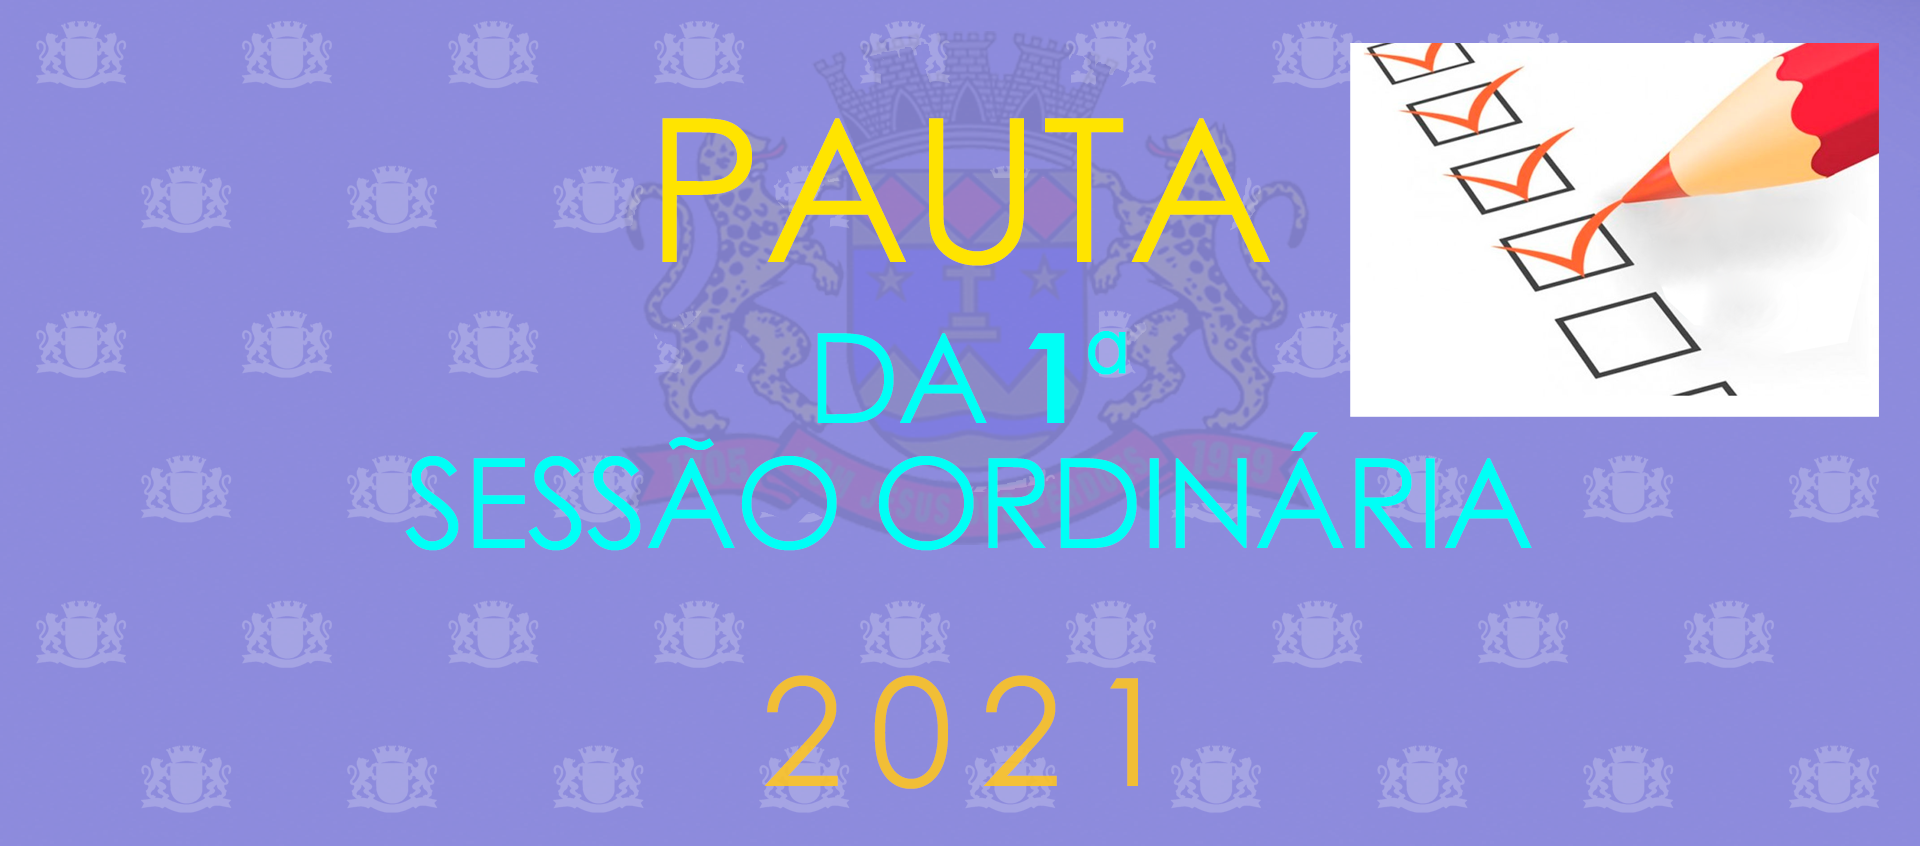 1ª Sessão Ordinária -2021 - 18 horas